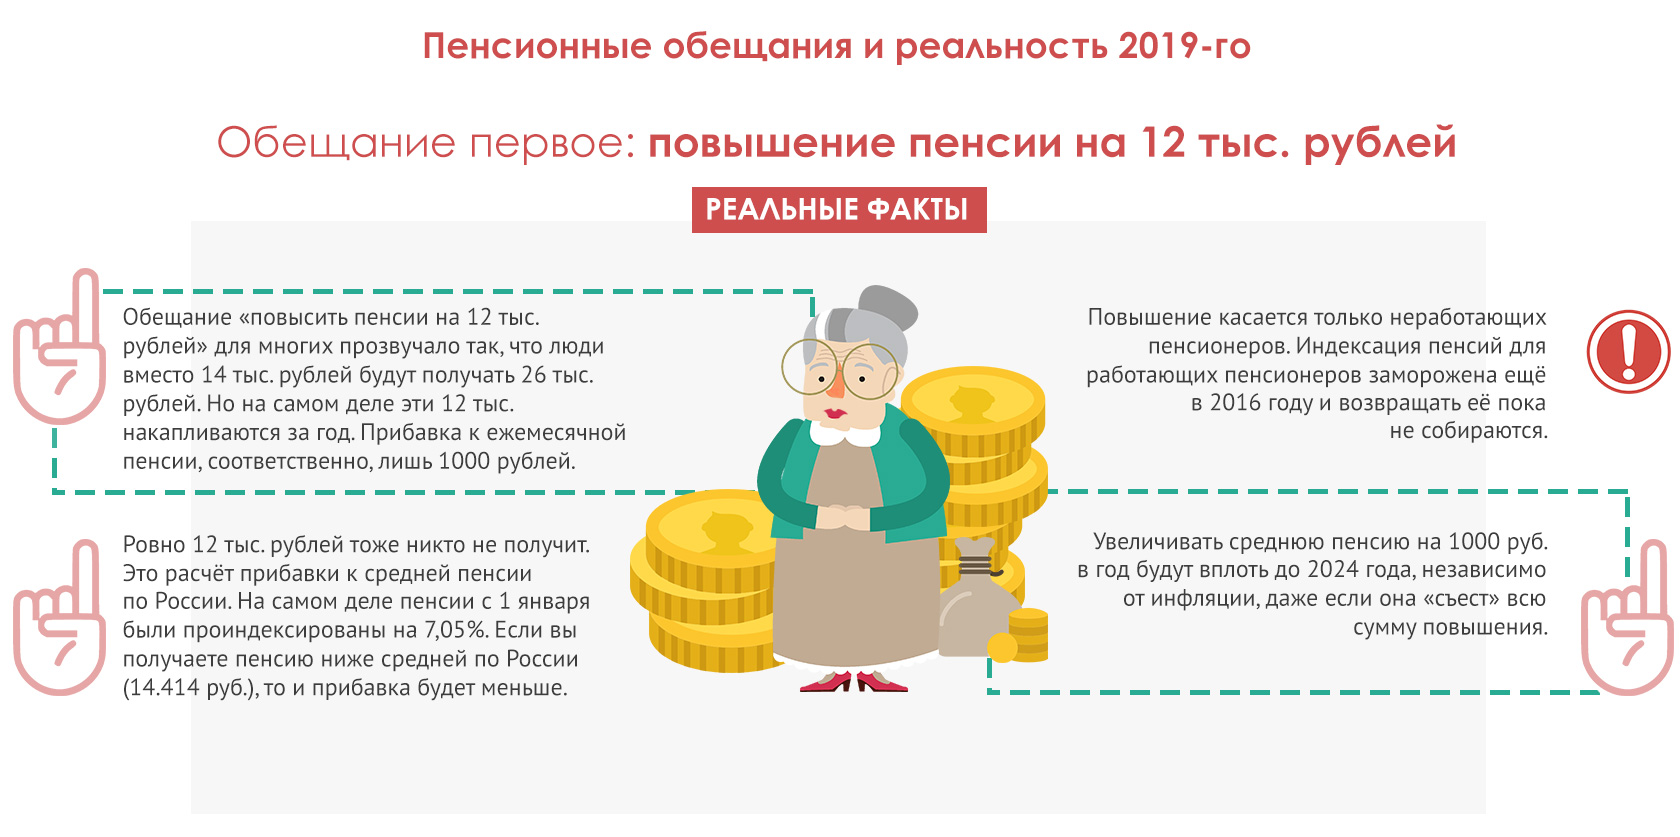 Едв пенсионерам в 2024 году неработающим. Как накопить на пенсию самостоятельно. Как самому позаботиться о пенсии?. Проблема низких пенсий в России. Получение пенсии это распределение.